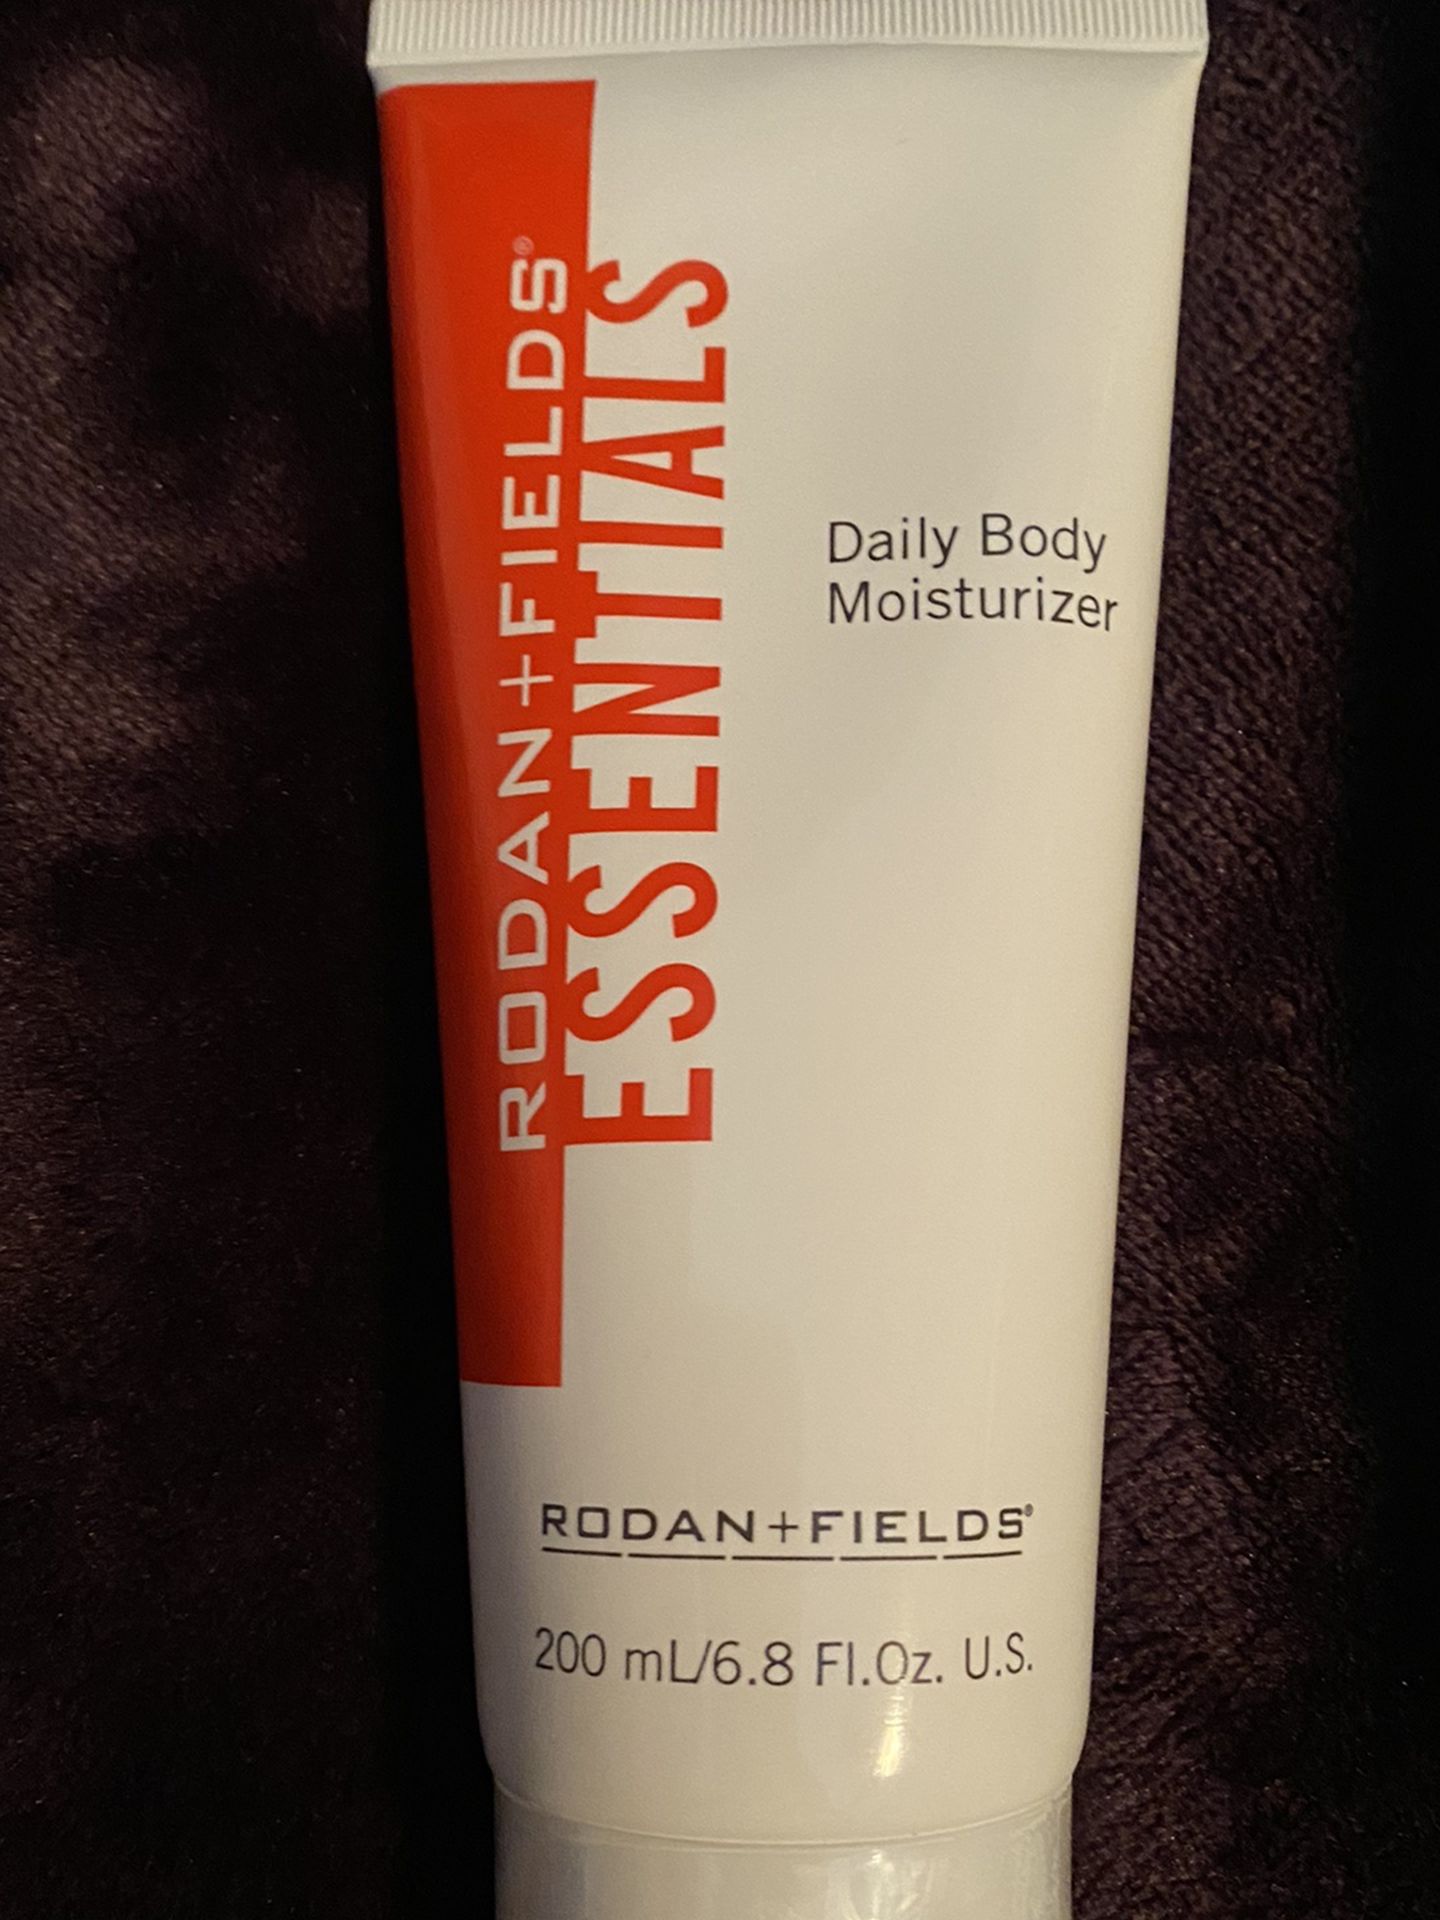 Rodan + Fields Daily Body Moisturizer